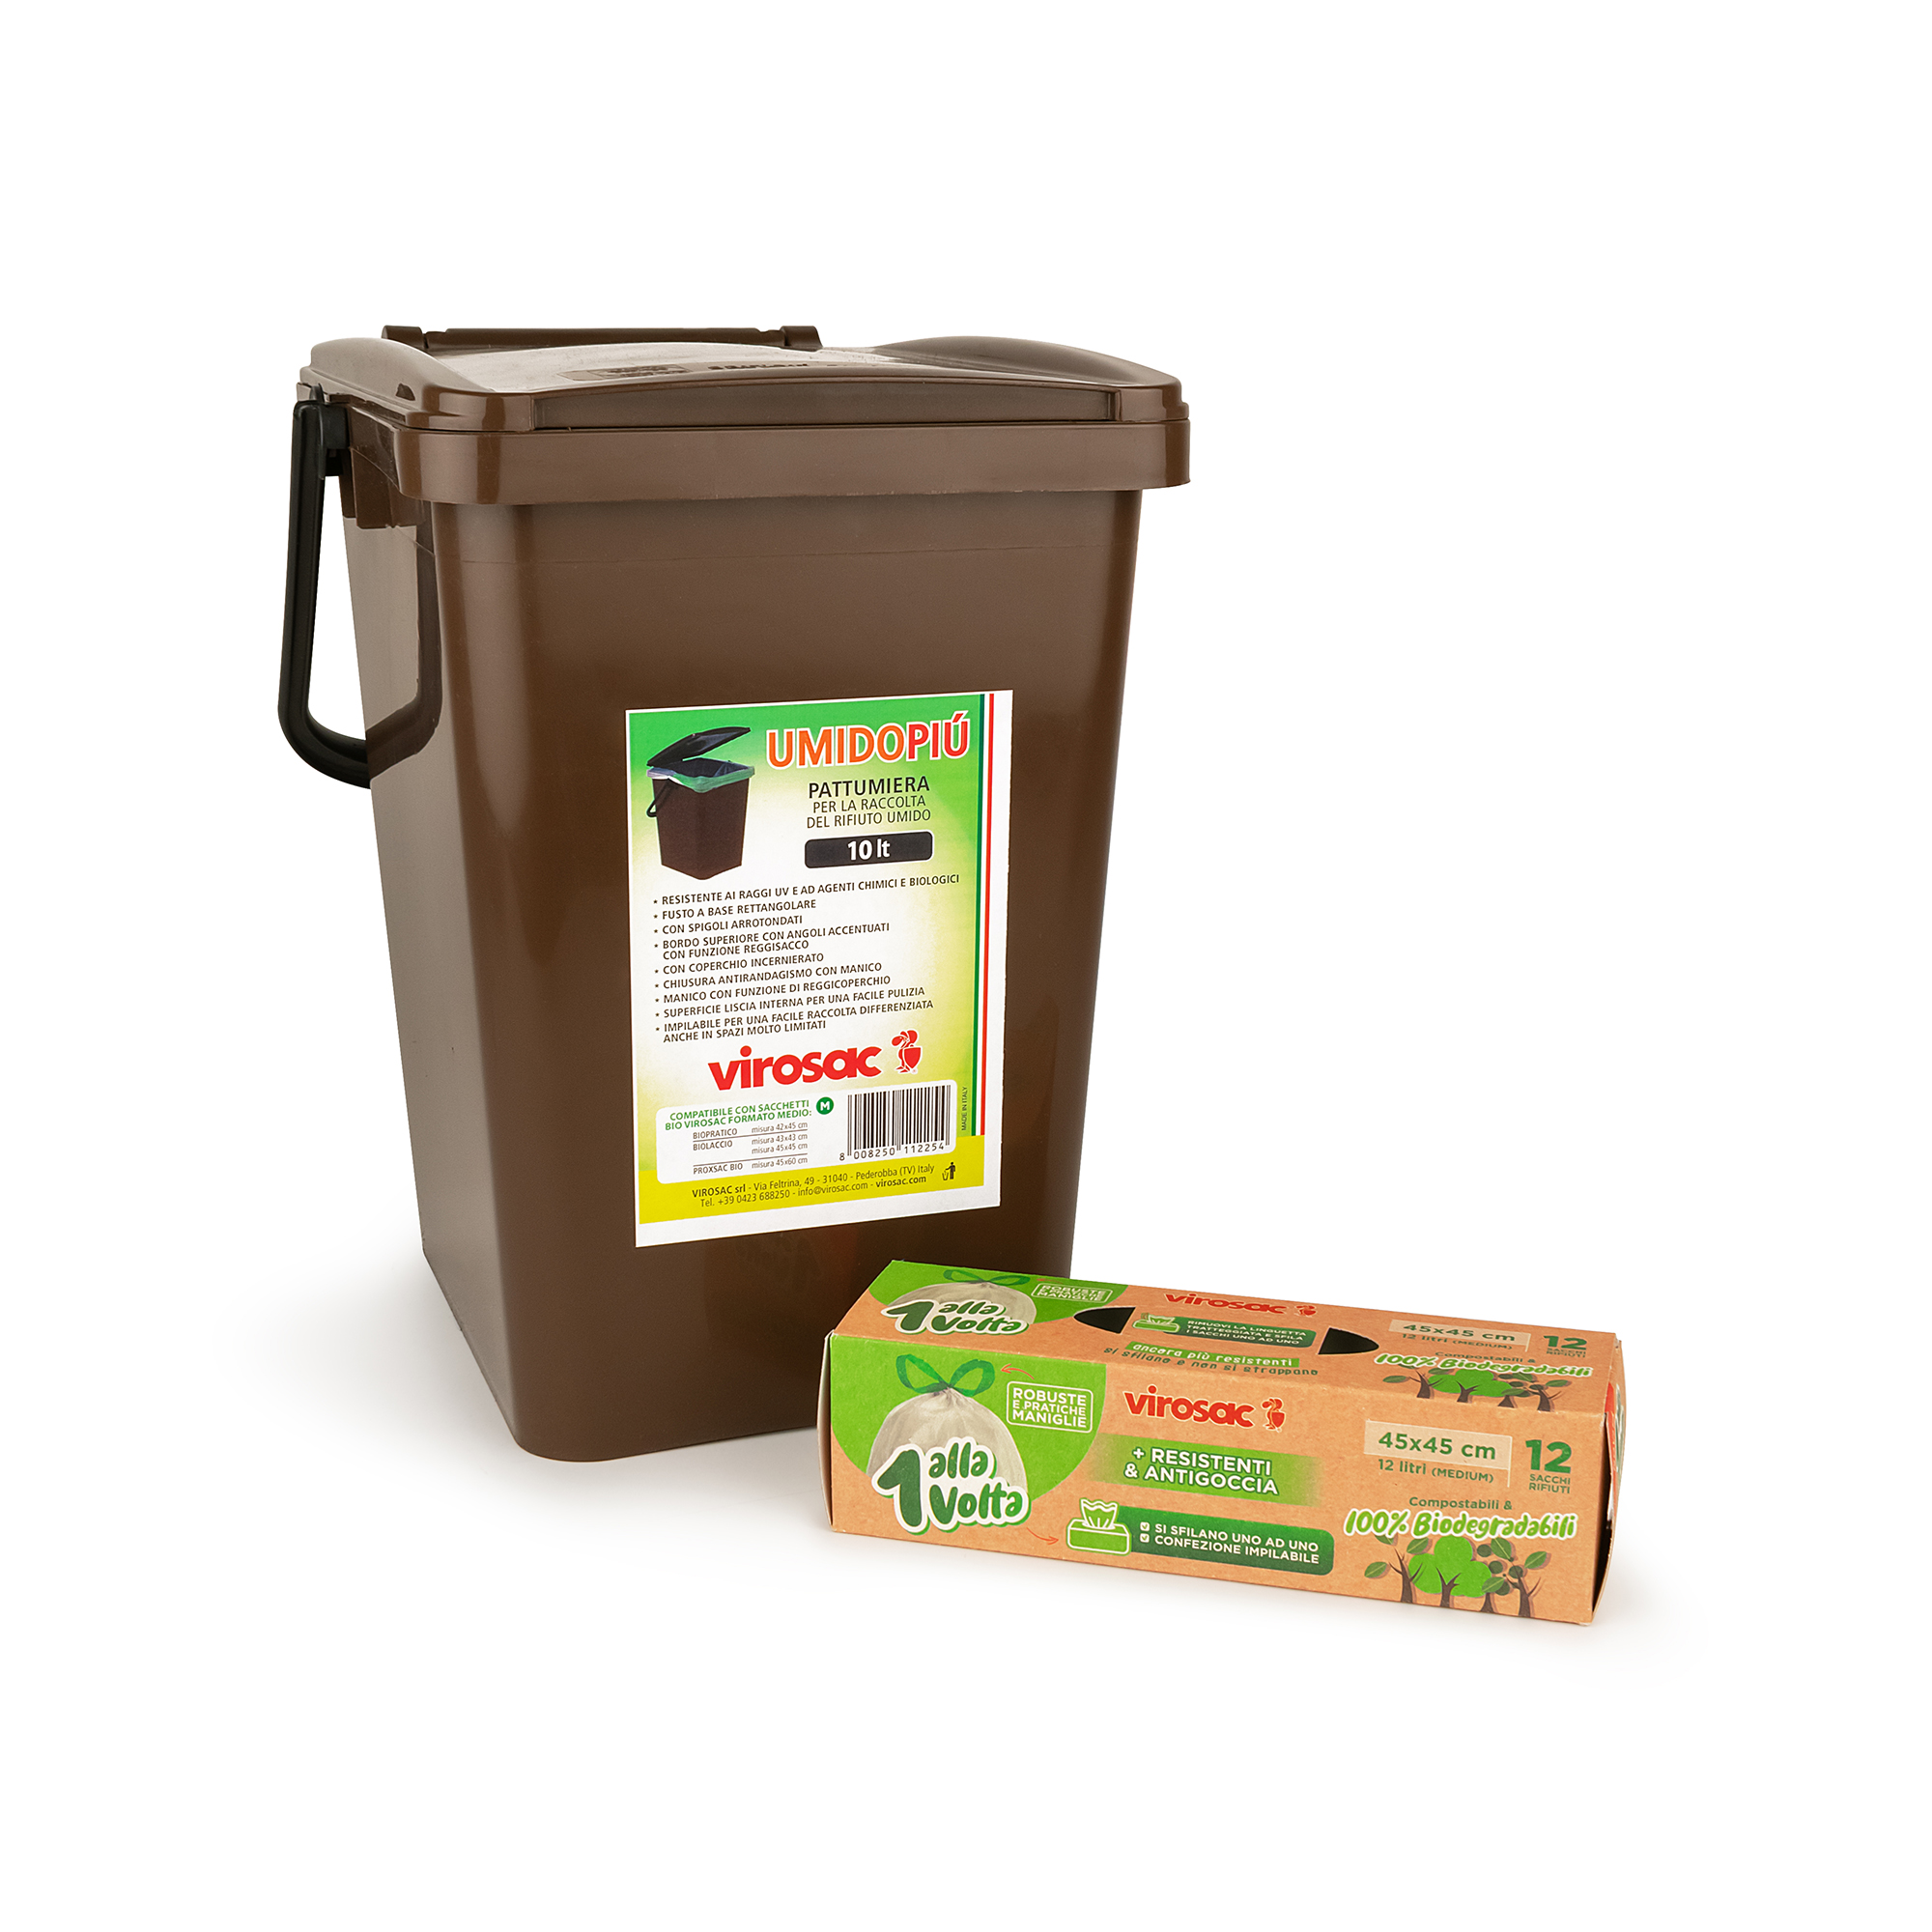 LKJHG 12 Litri 200 Sacchi di Sacchetti per rifiuti organici biodegradabili e compostabili al 100% bidoni della Spazzatura in plastica Sacchetti per rifiuti da 12 Litri 